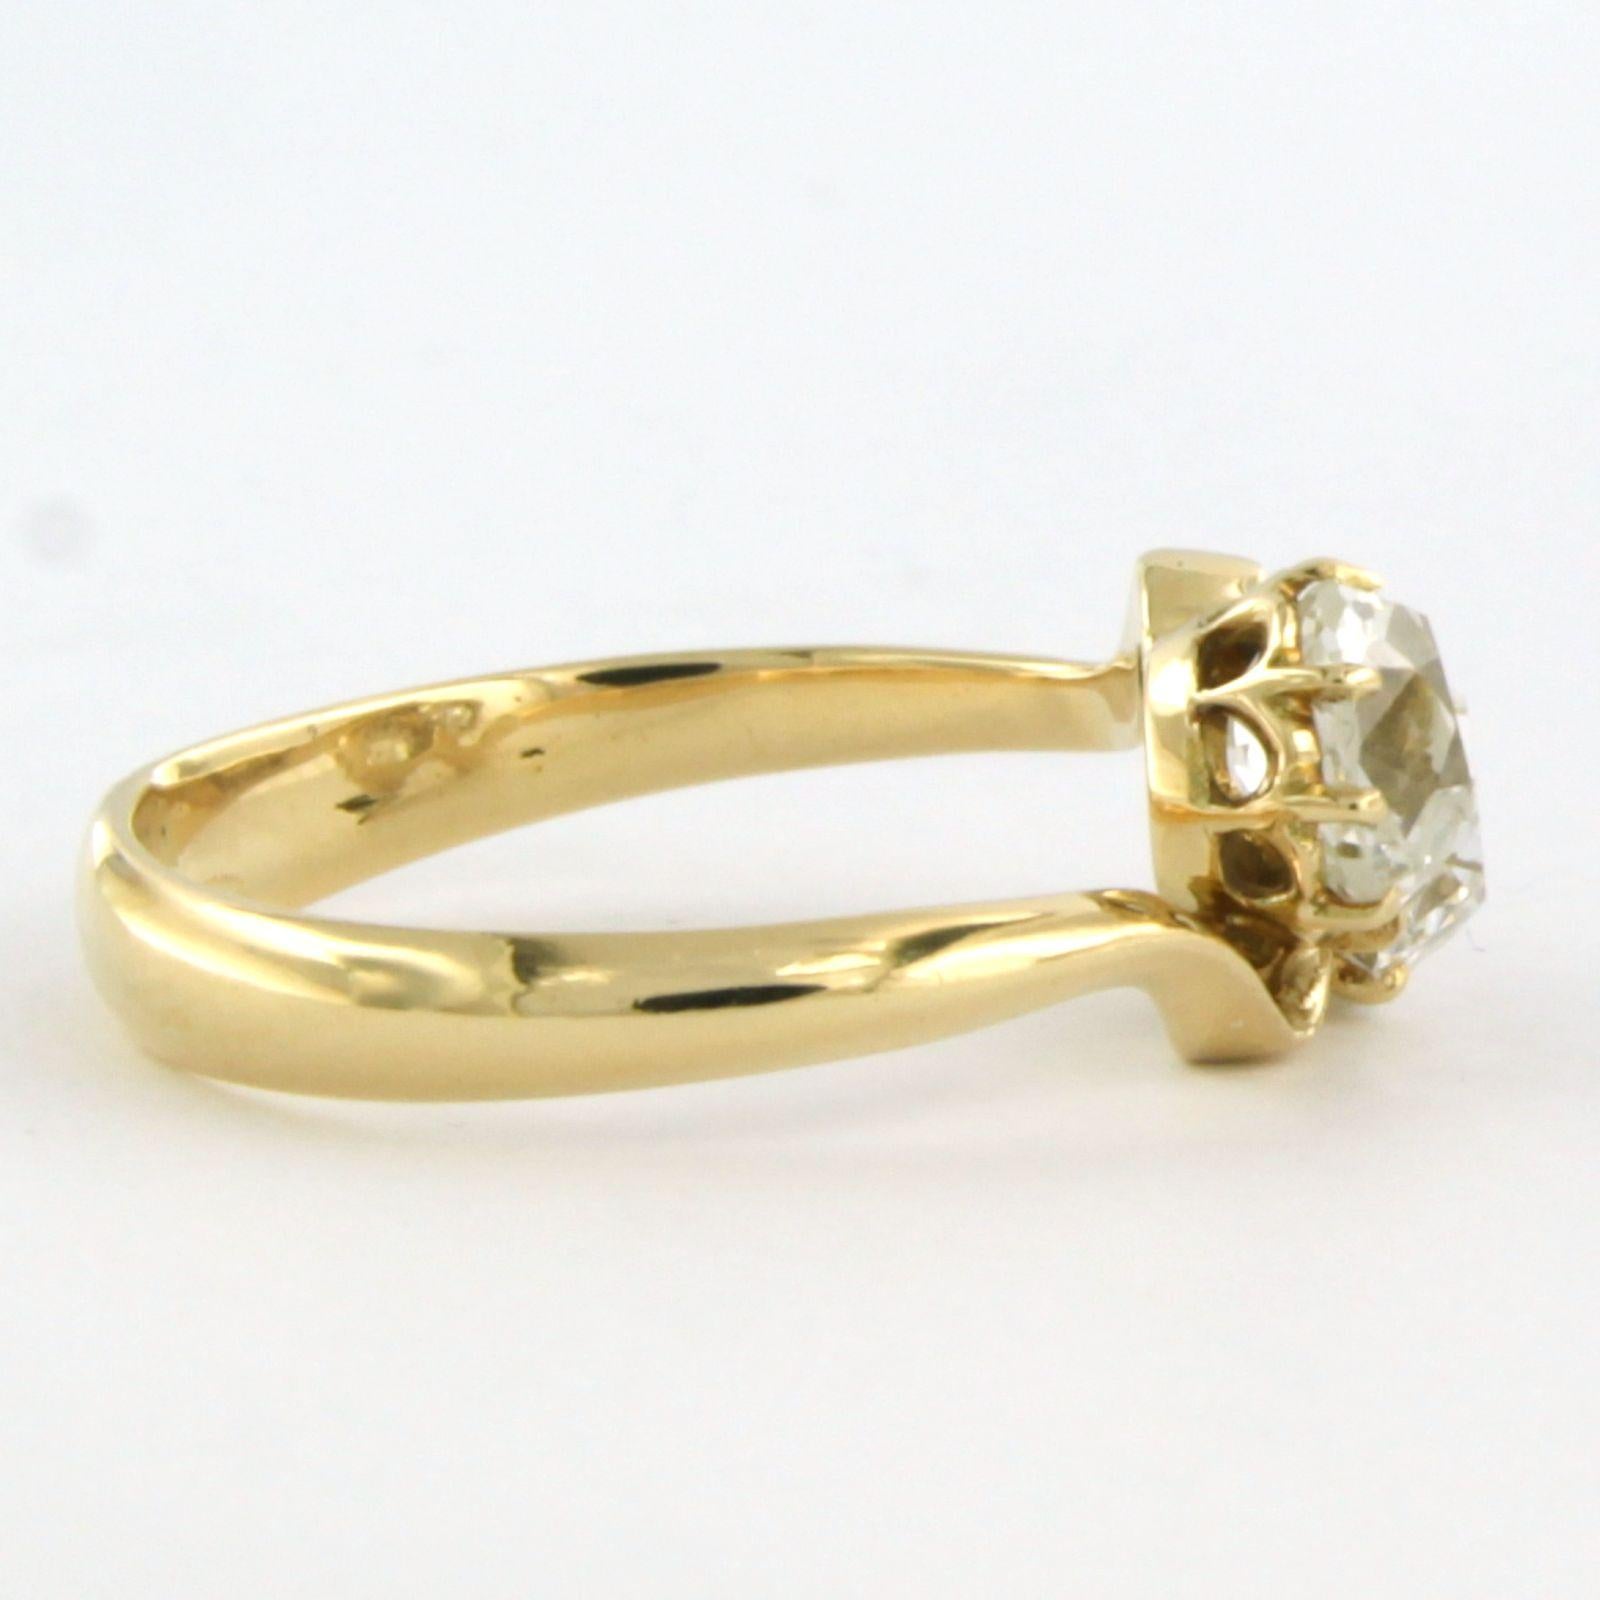 De las mujeres Informe sobre diamantes IGI - Anillo de oro de 14k engastado con diamantes talla mina vieja de hasta 1,59 ct